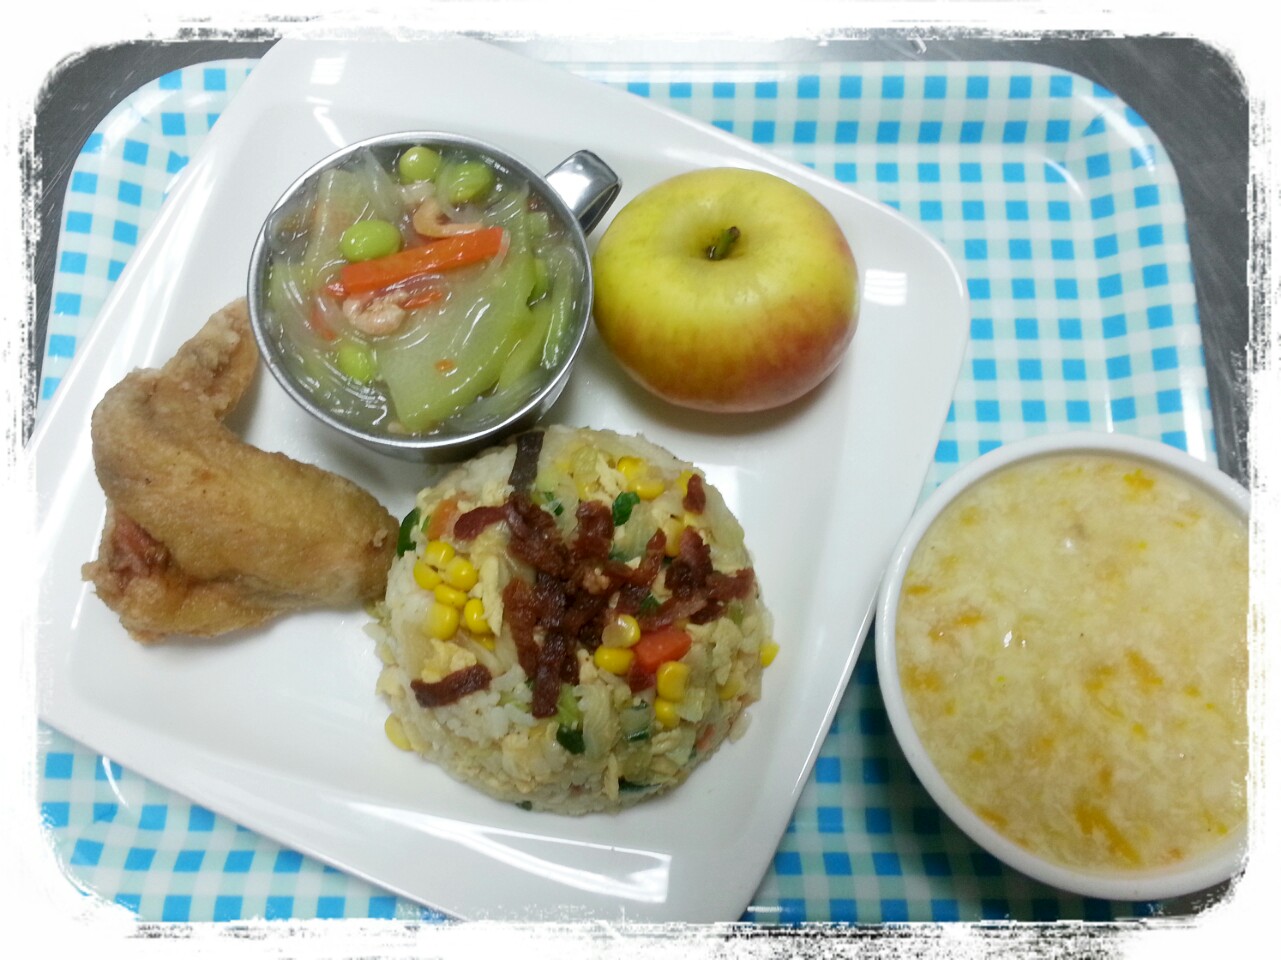 磐石高中校園廚房: 1041015晚餐菜色